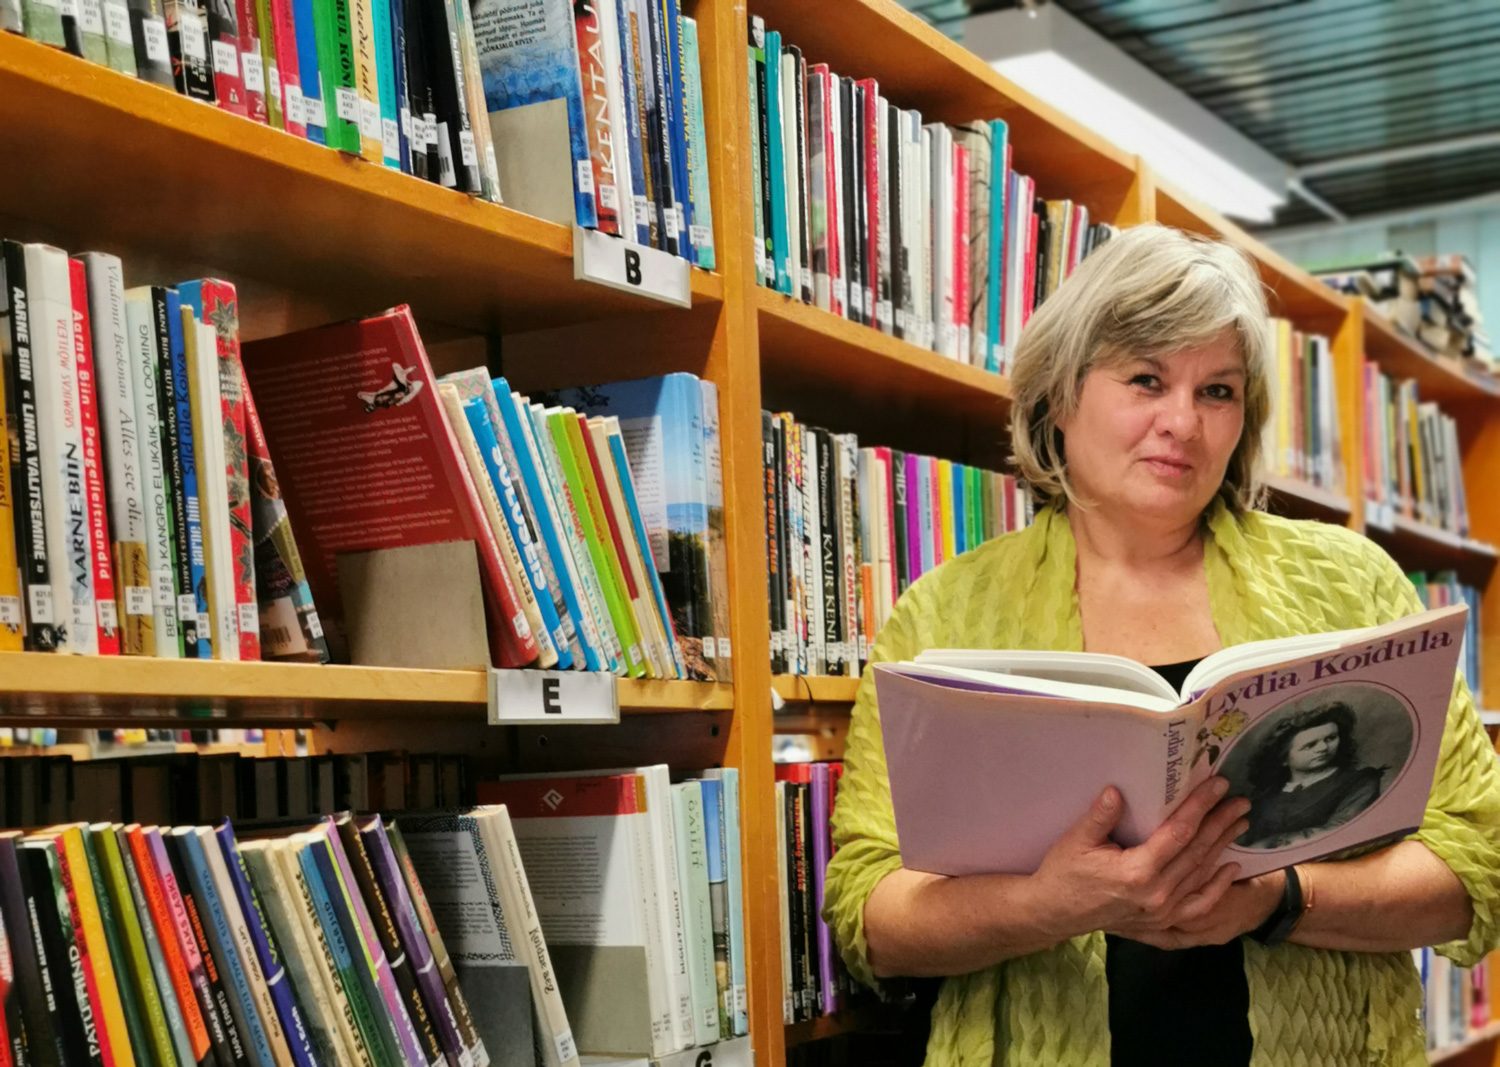 Linda raamatukogu direktor Liana Allas on tänulik Antsla valla juhile Avo Kirsbaumile, kes on alati valmis muresid kuulama ja lahendusi leidma. Foto: ERLE ALLAS